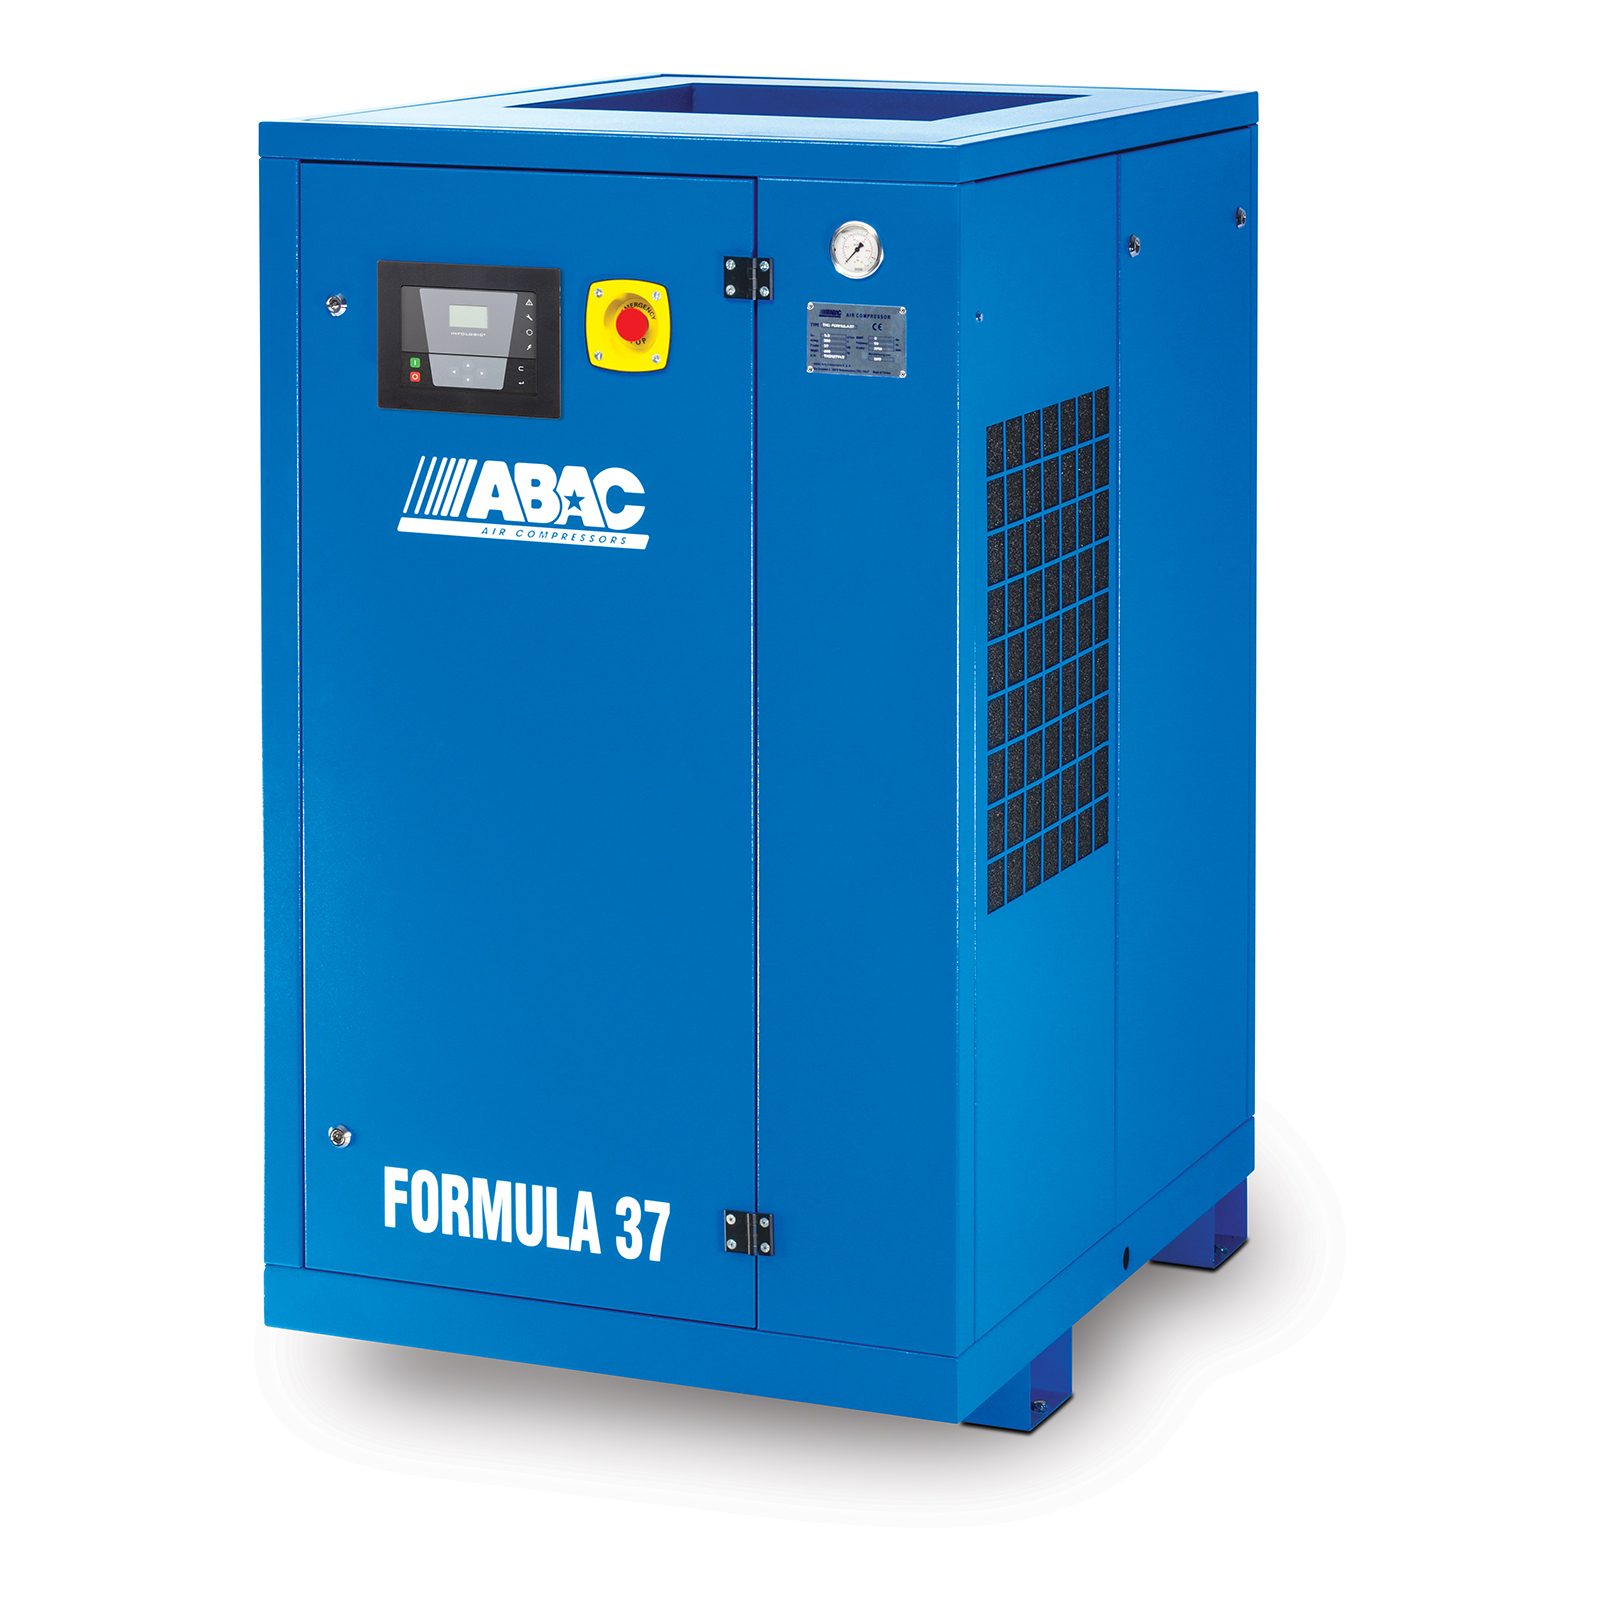 Filter Service Kit Fits ABAC FORMULA 15 FORMULA 20 Compressor 